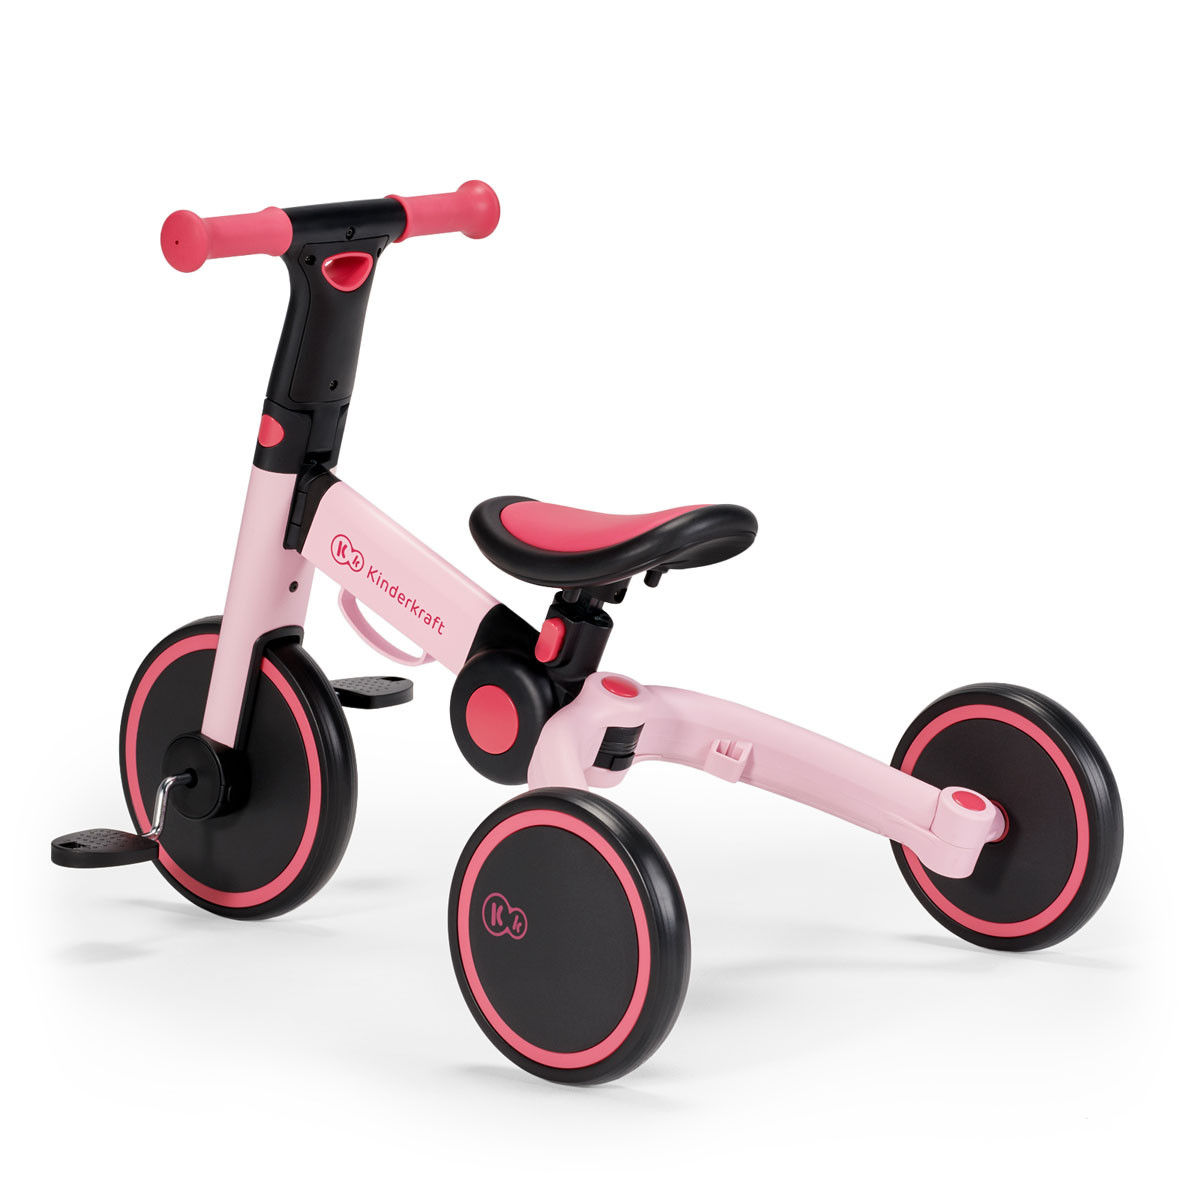 Triciclo 4TRIKE 3 en 1 de Kinderkraft, las ruedas están hechas de espuma antipinchazos resistentes a la abrasión.